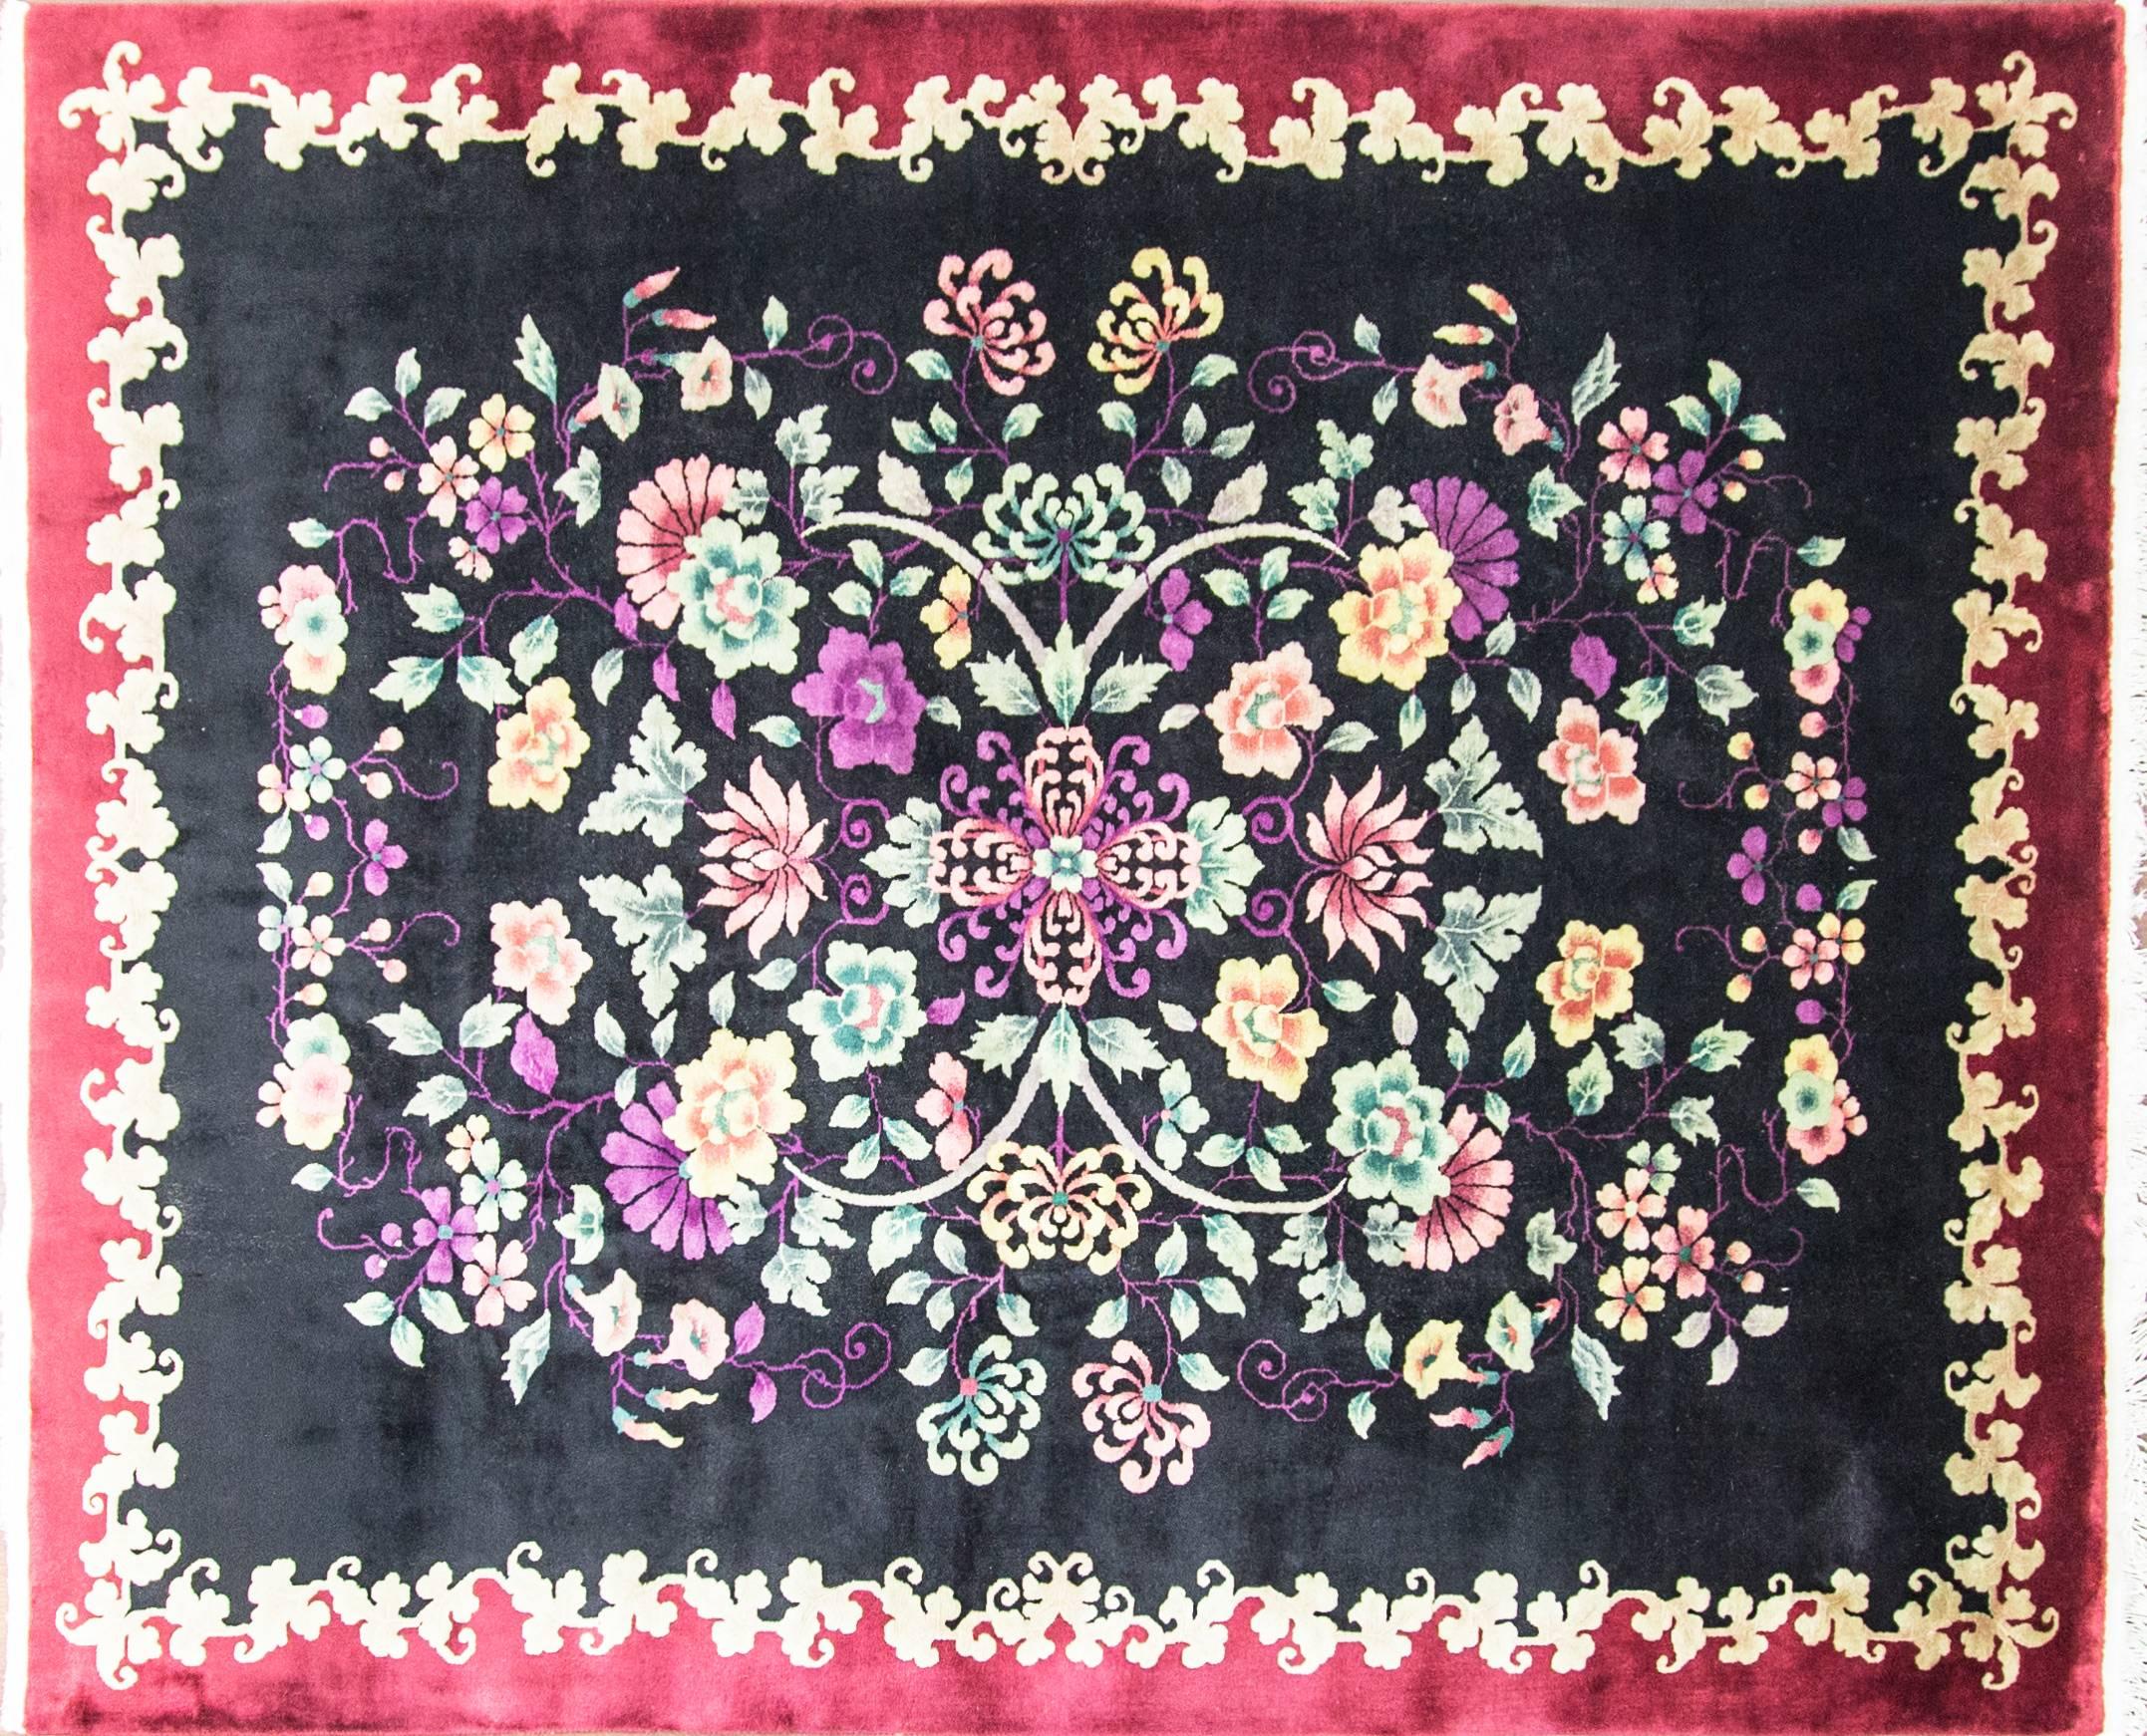 Walter Nichols war ein großer amerikanischer Teppichproduzent (die Art-Déco-Teppiche, die er nicht schuf) in Tientsin. Die Teppiche aus Wolle und Seide mit kräftigen leuchtenden Farben und das Muster sind malerische Szenen und Bäume, Vögel, Wolken,